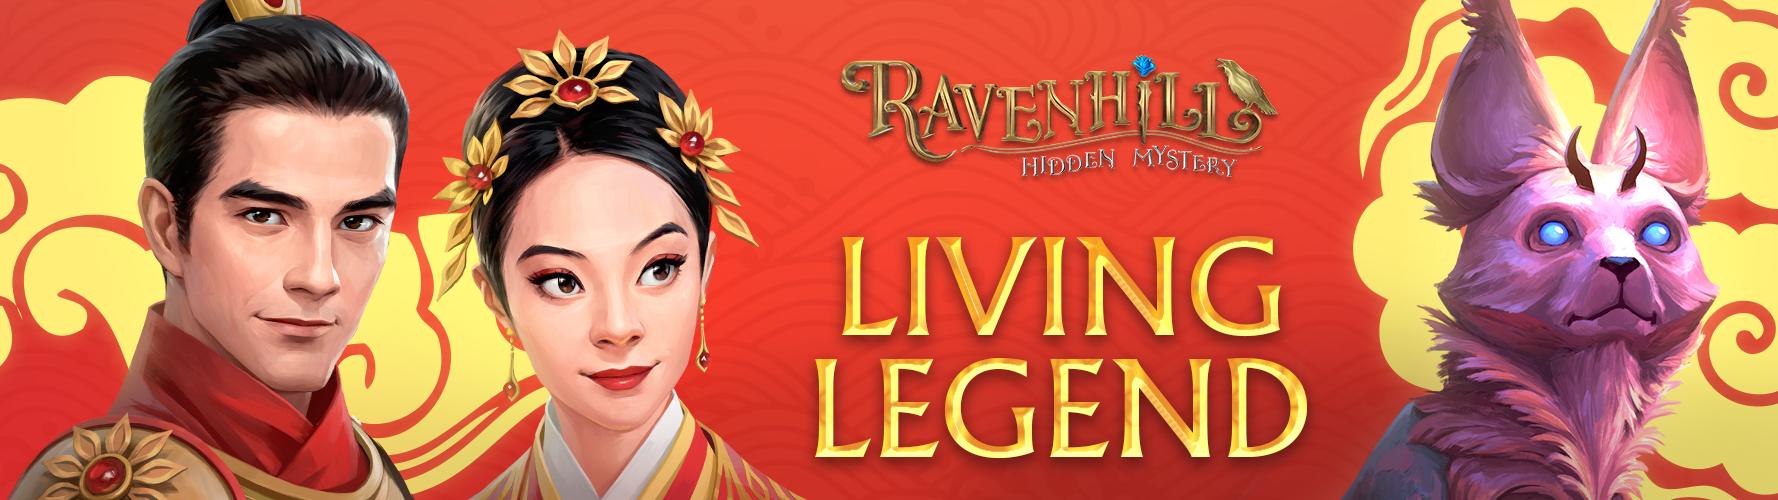 Ravenhill: Hidden Mystery. Update 2.14.0: Living Legend